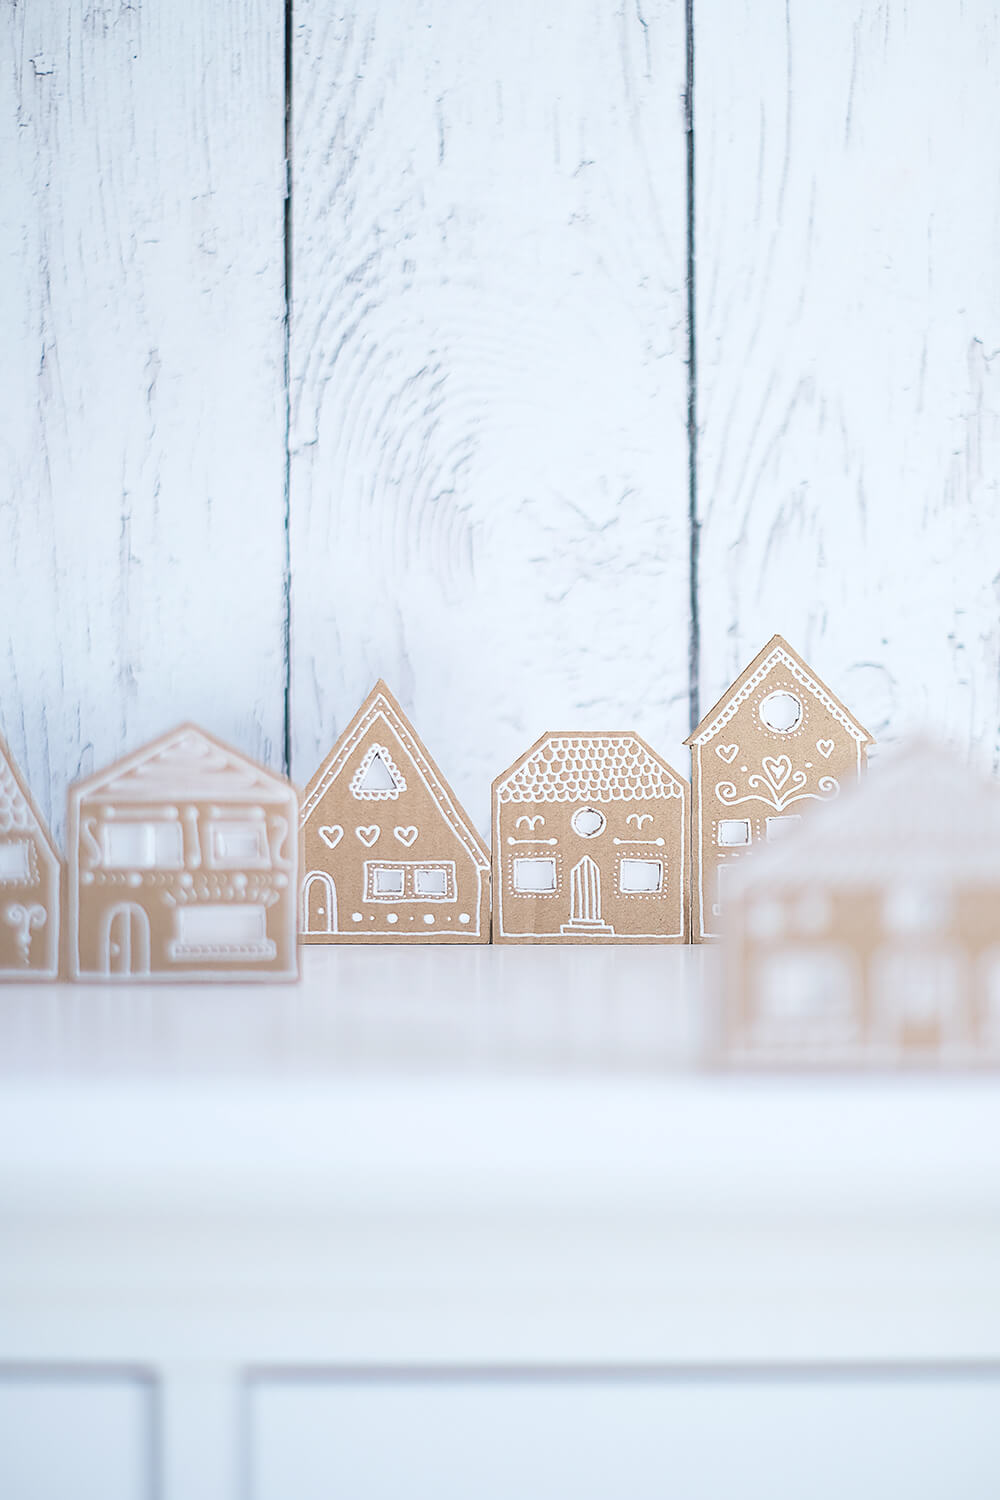 DIY Upcycling Weihnachtsdeko - Lebkuchenhäuser aus Pappkarton von Gingered Things